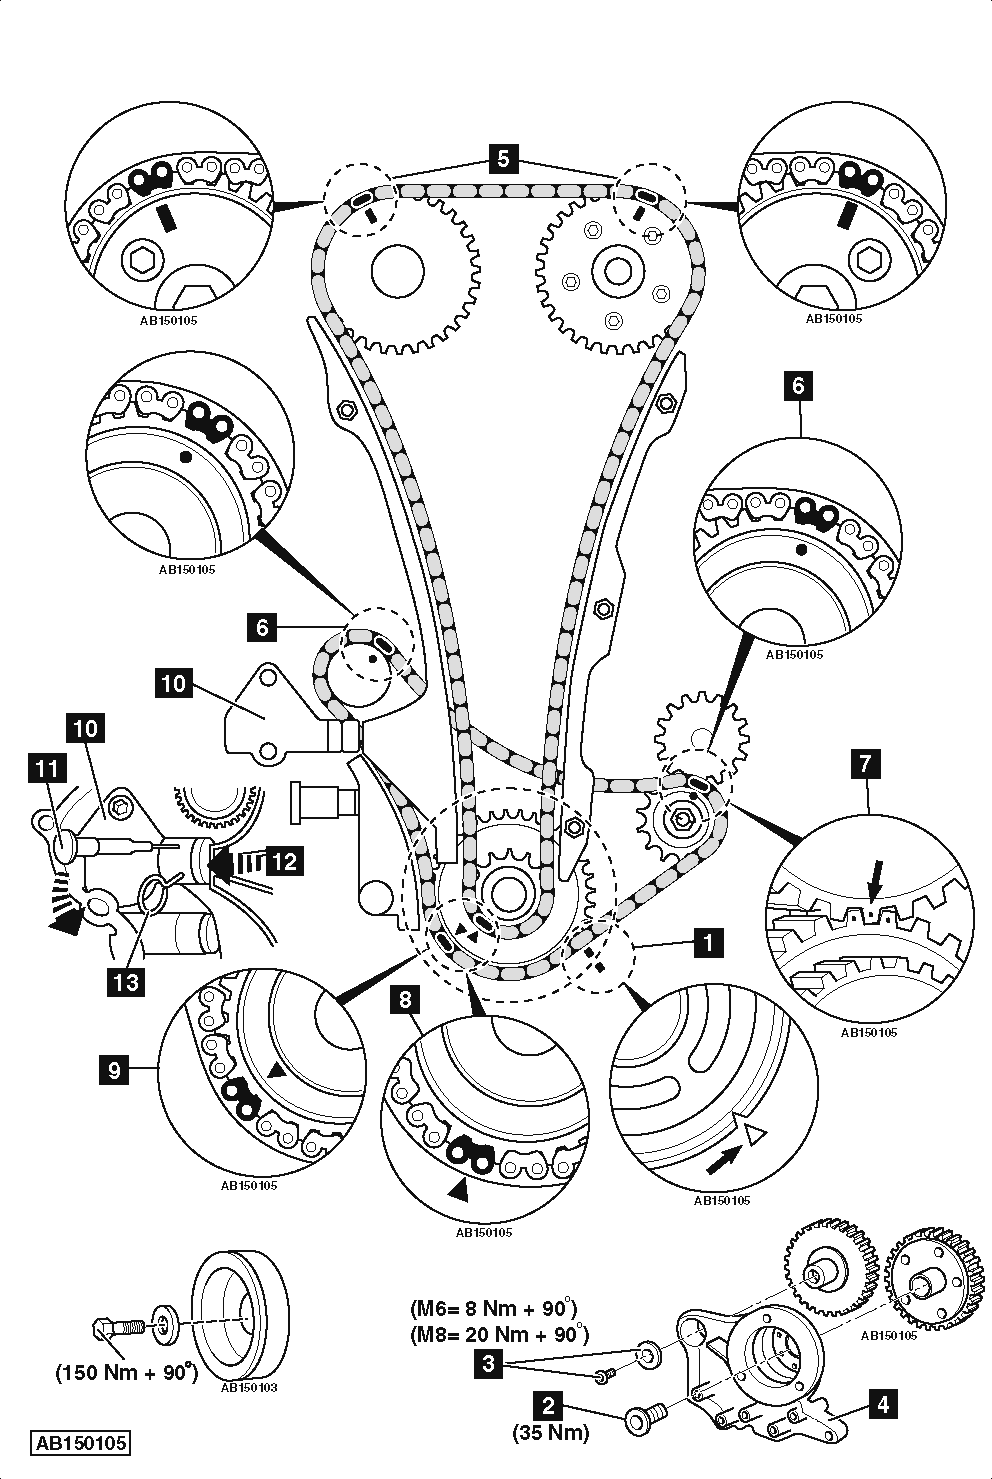 Diagrama de distribución del motor 1.8 Turbo 16 válvulas